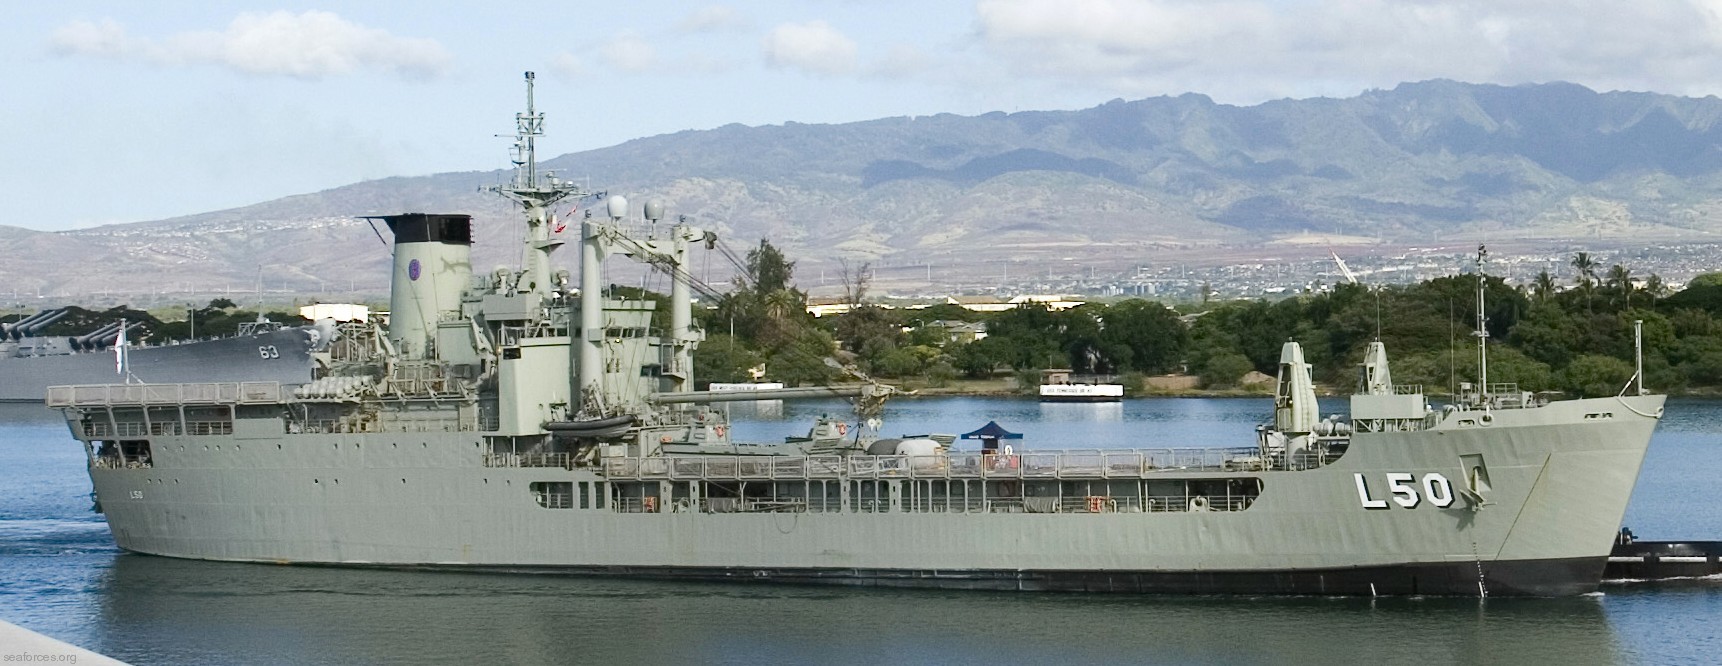 l-50 hmas tobruk landing ship heavy amphibious lsh royal australian navy 2008 07 pearl harbor hawaii